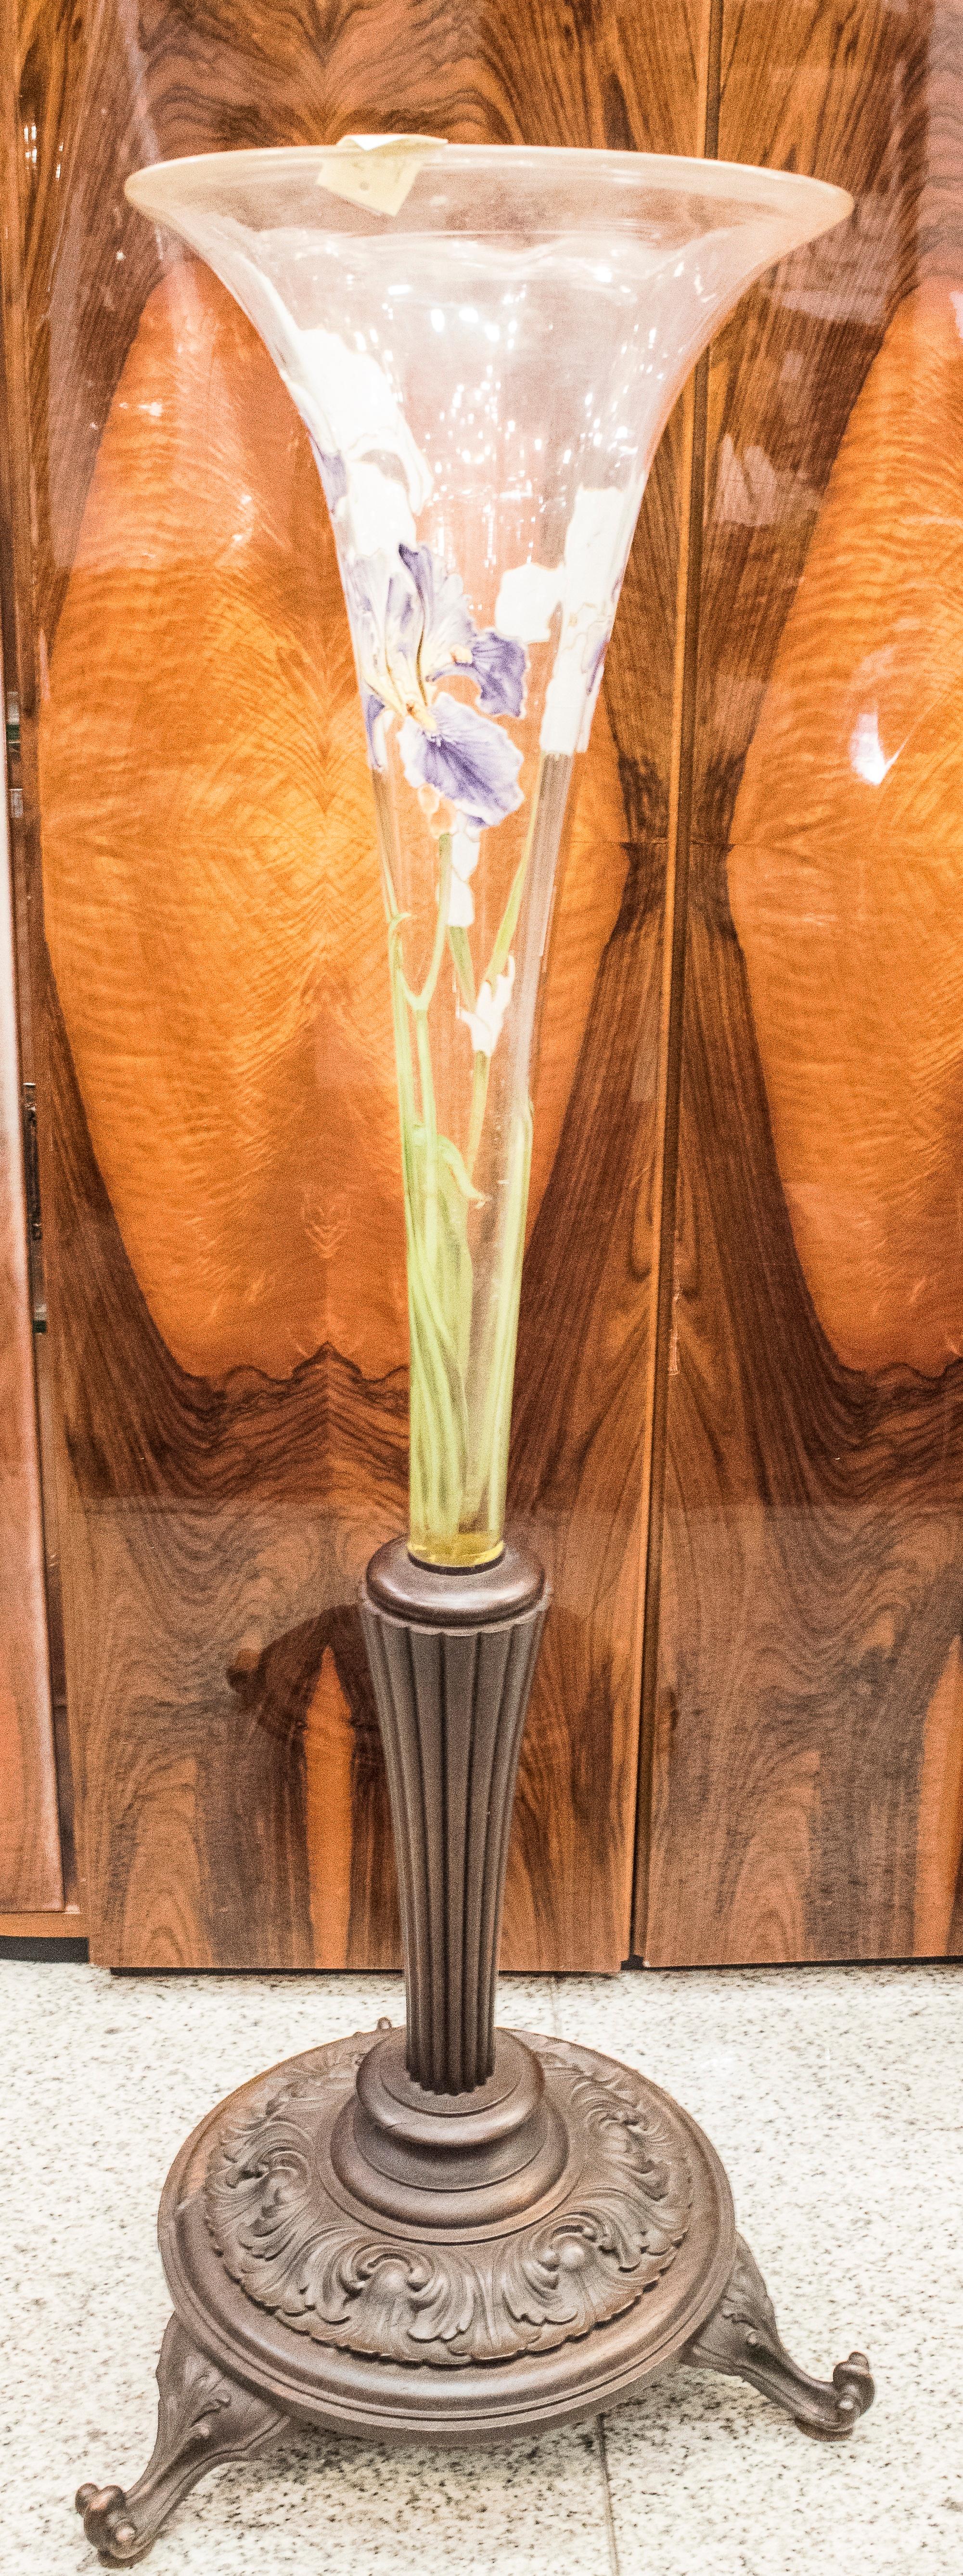 Art Nouveau Blown Glass Painted with Iris Pattern Vase 1